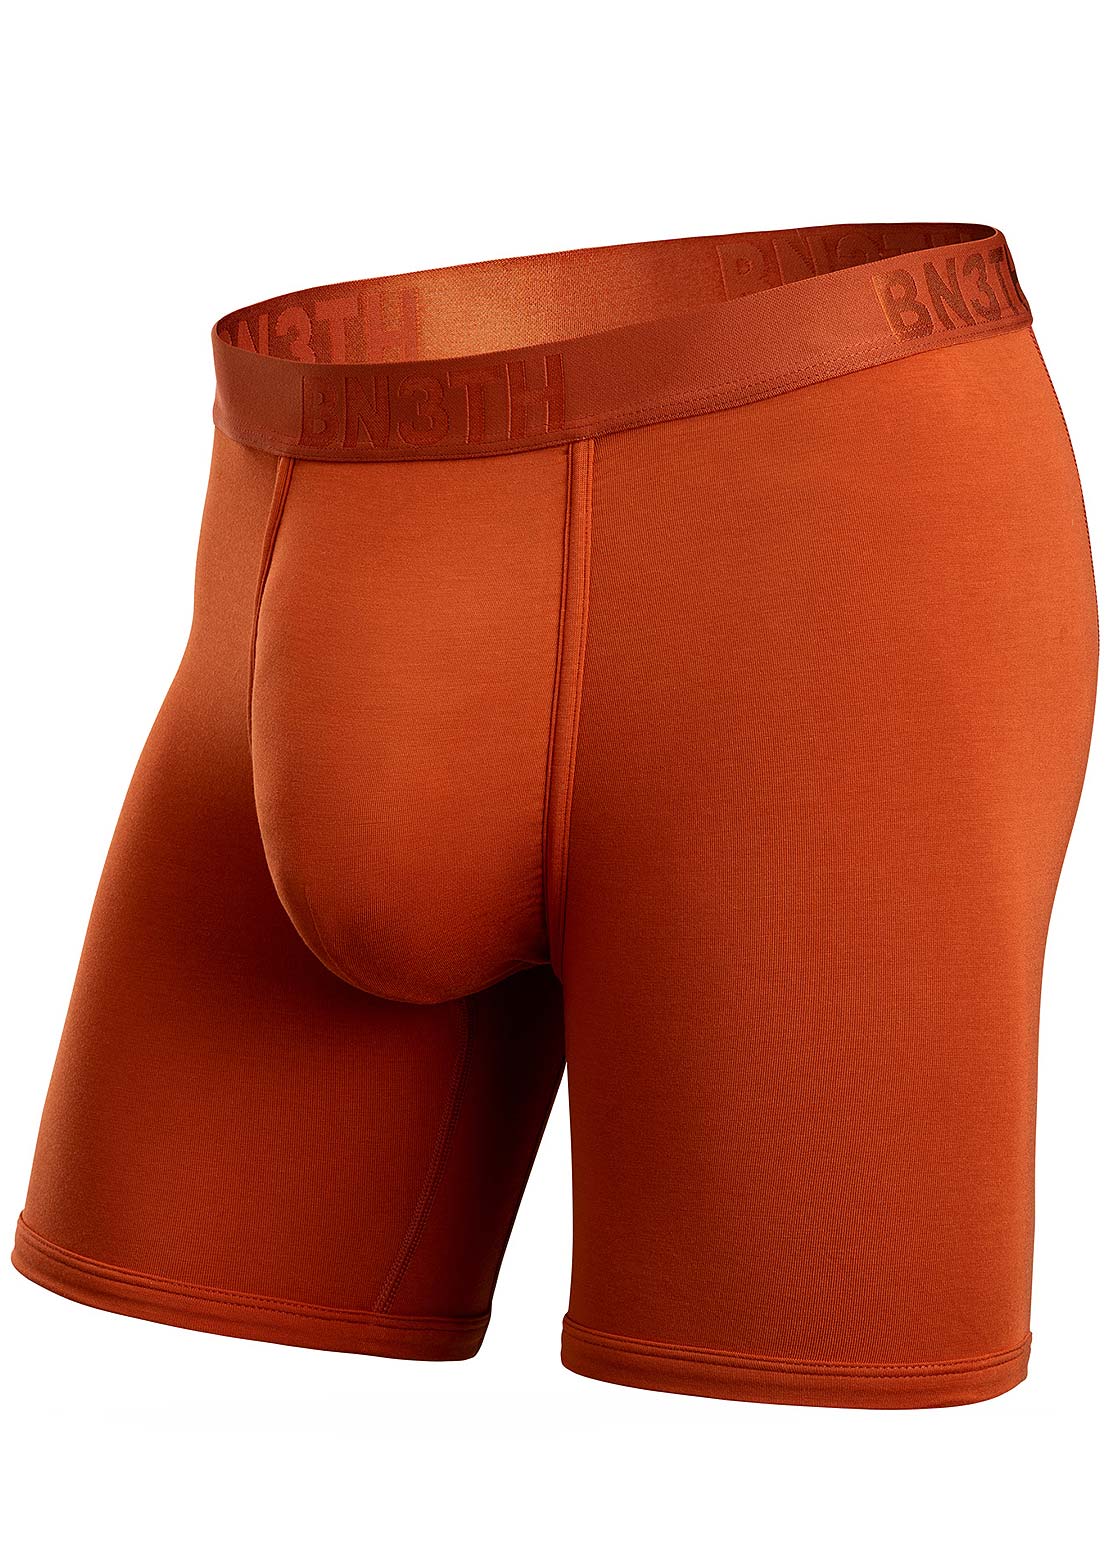 Men's Underwear - PRFO Sports